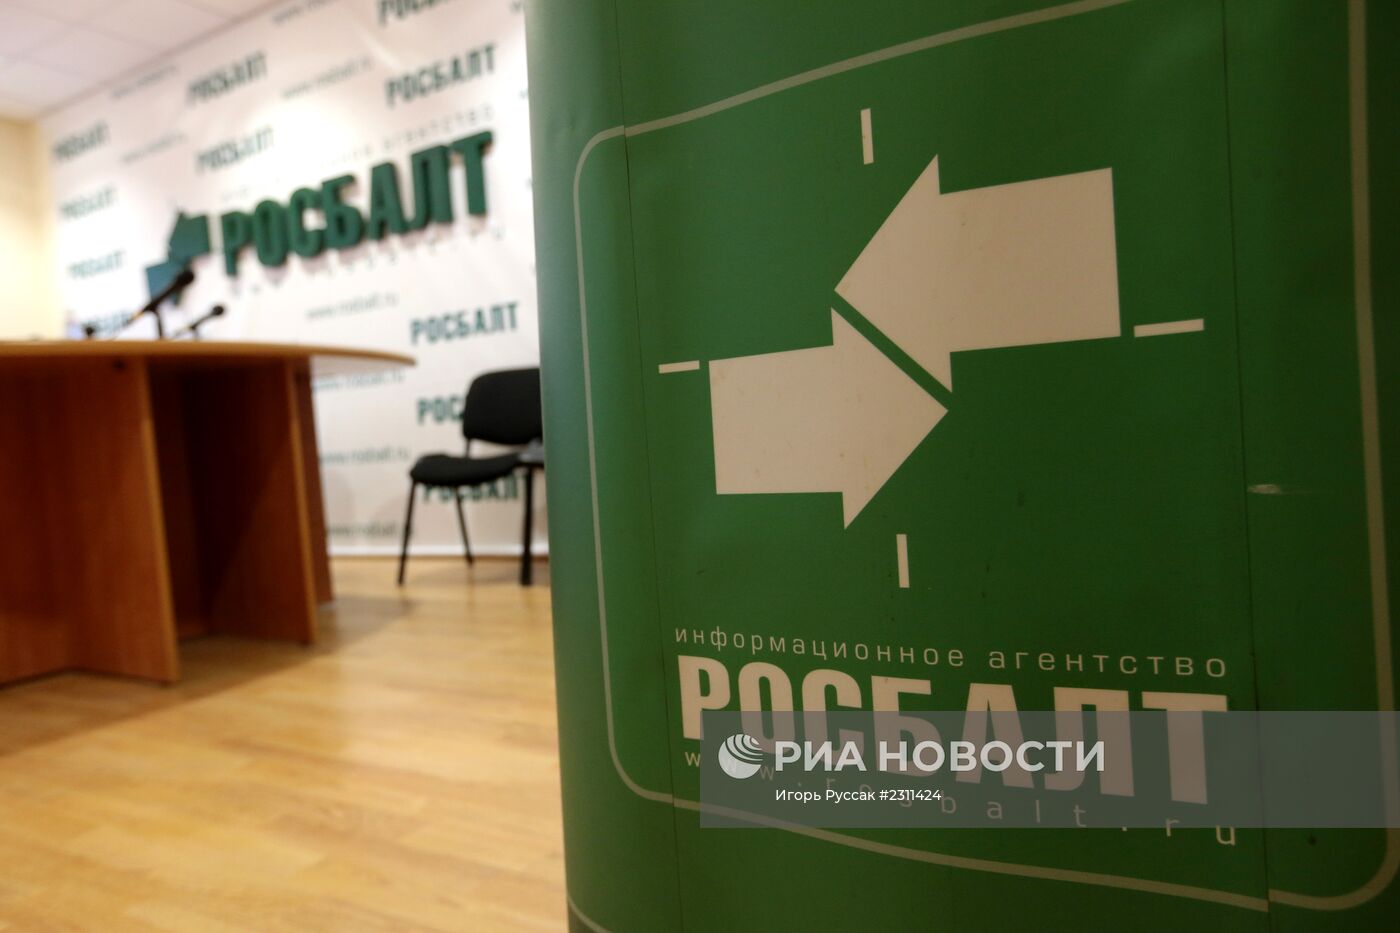 Мосгорсуд лишил агентство "Росбалт" свидетельства о регистрации СМИ